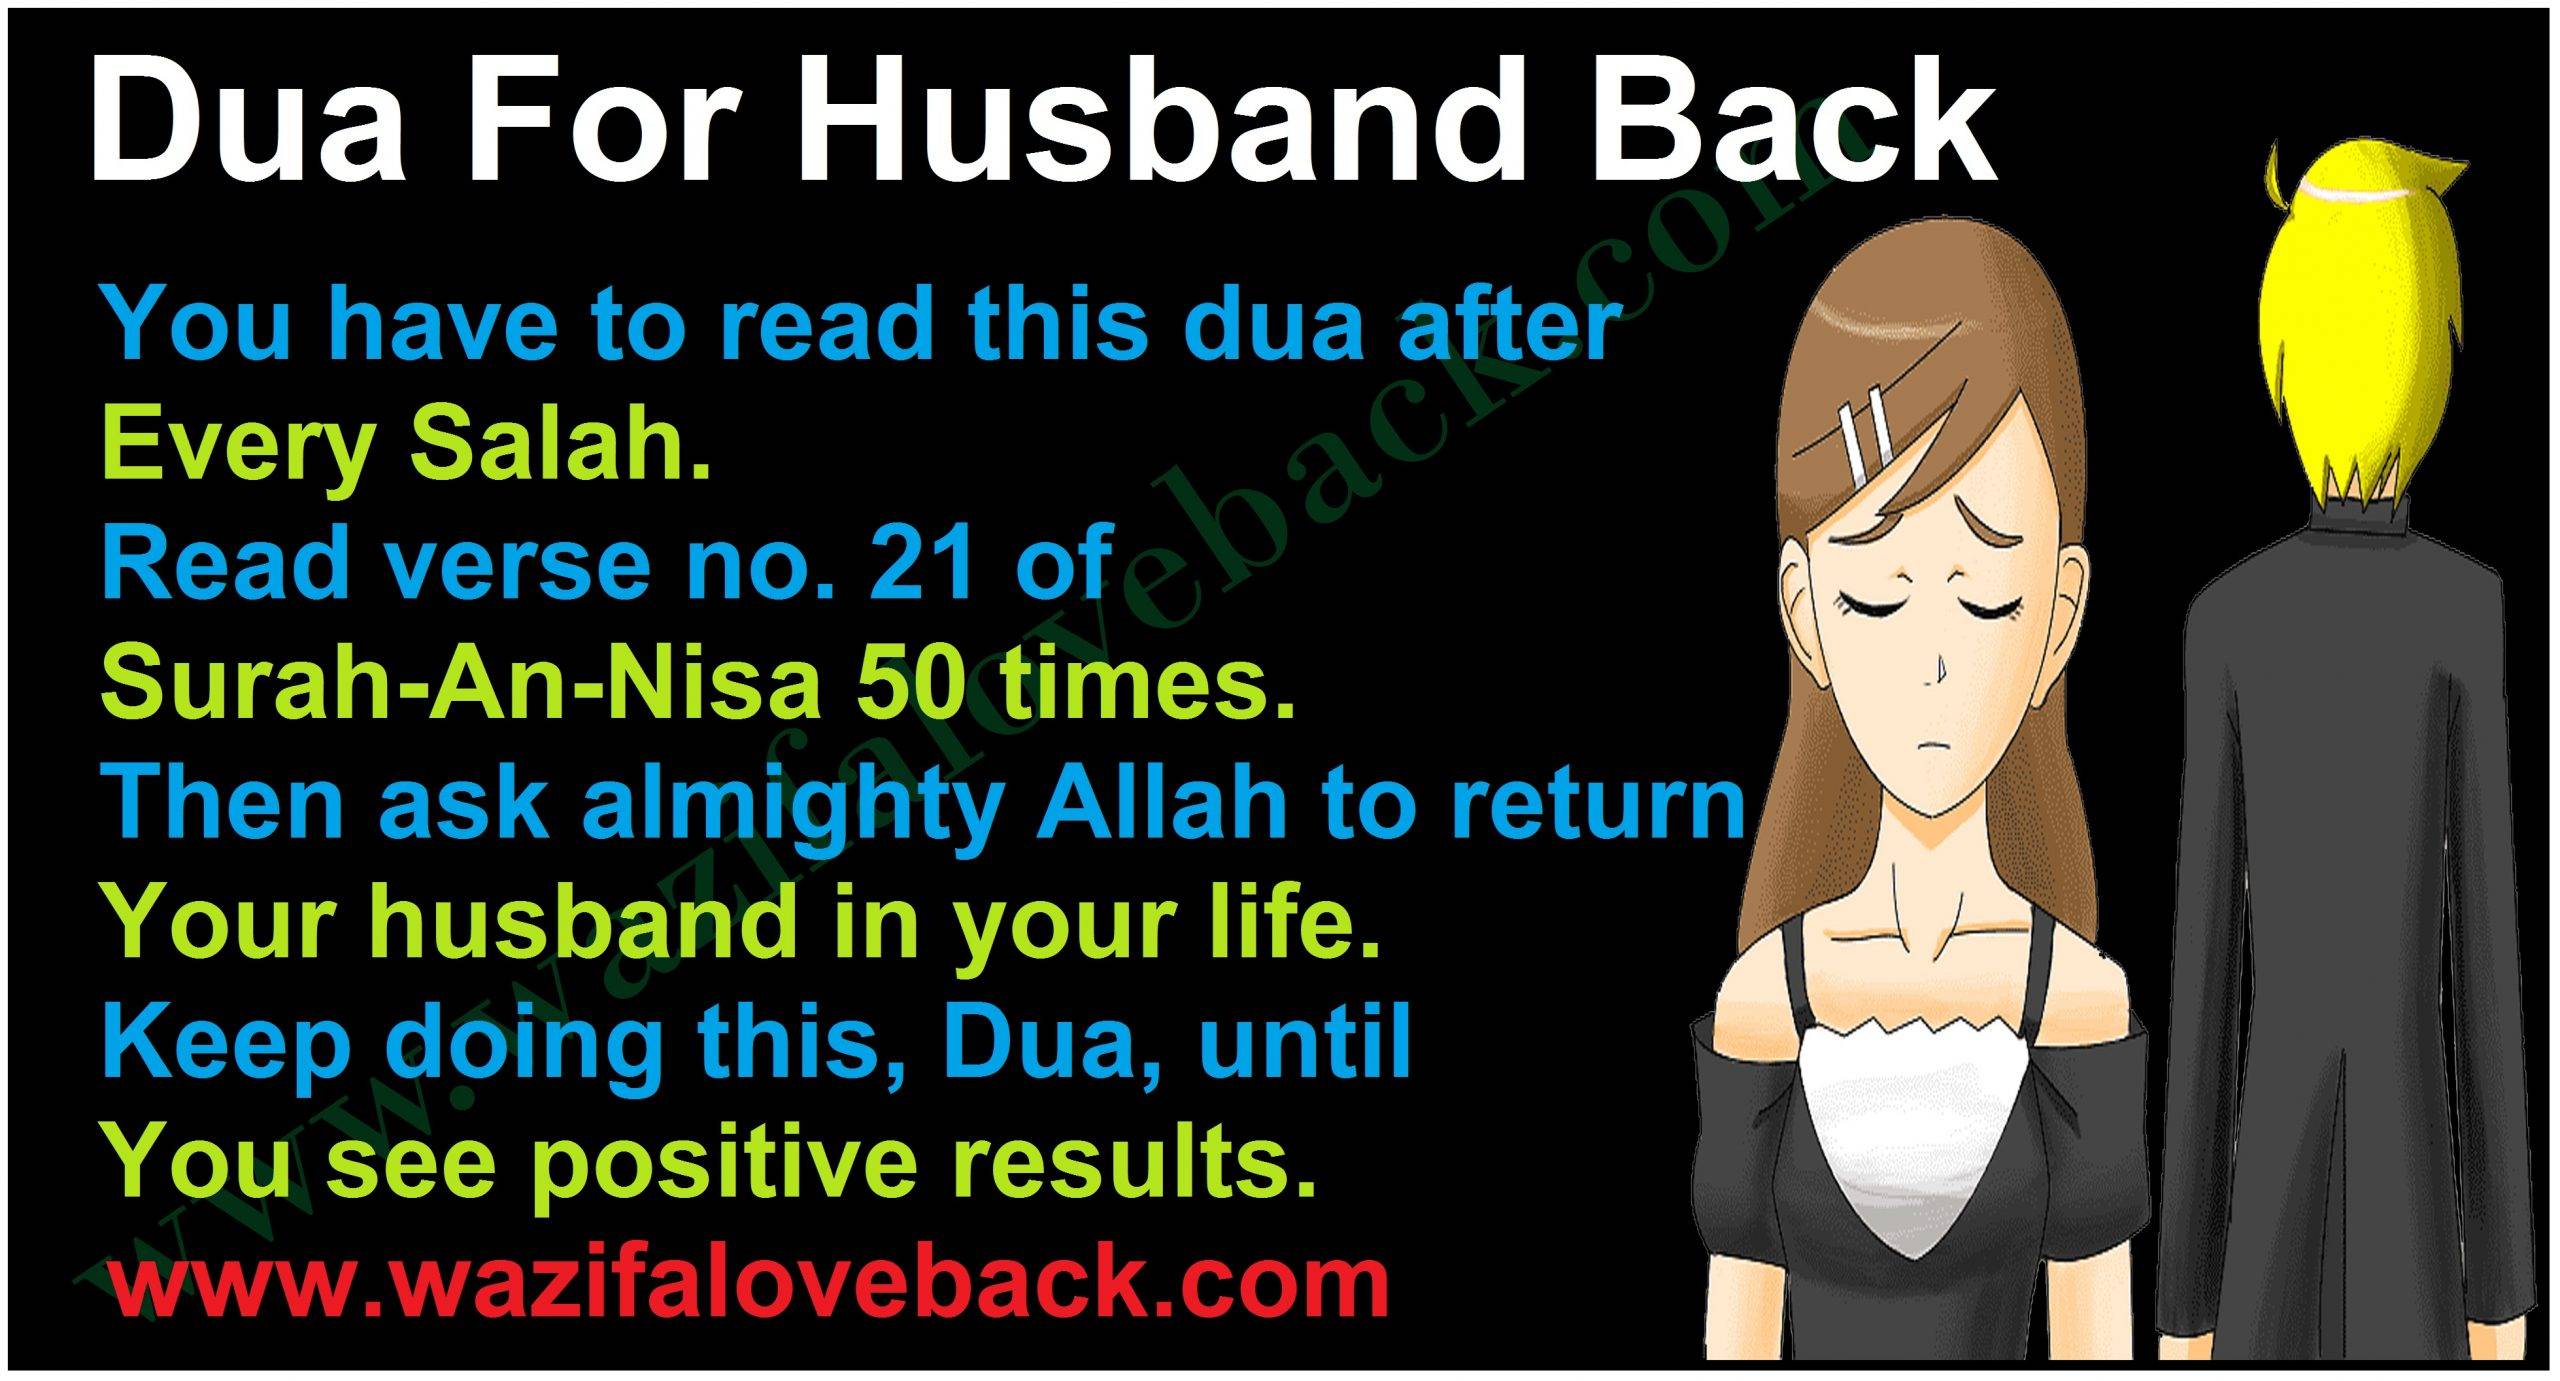 Dua For Husband Back